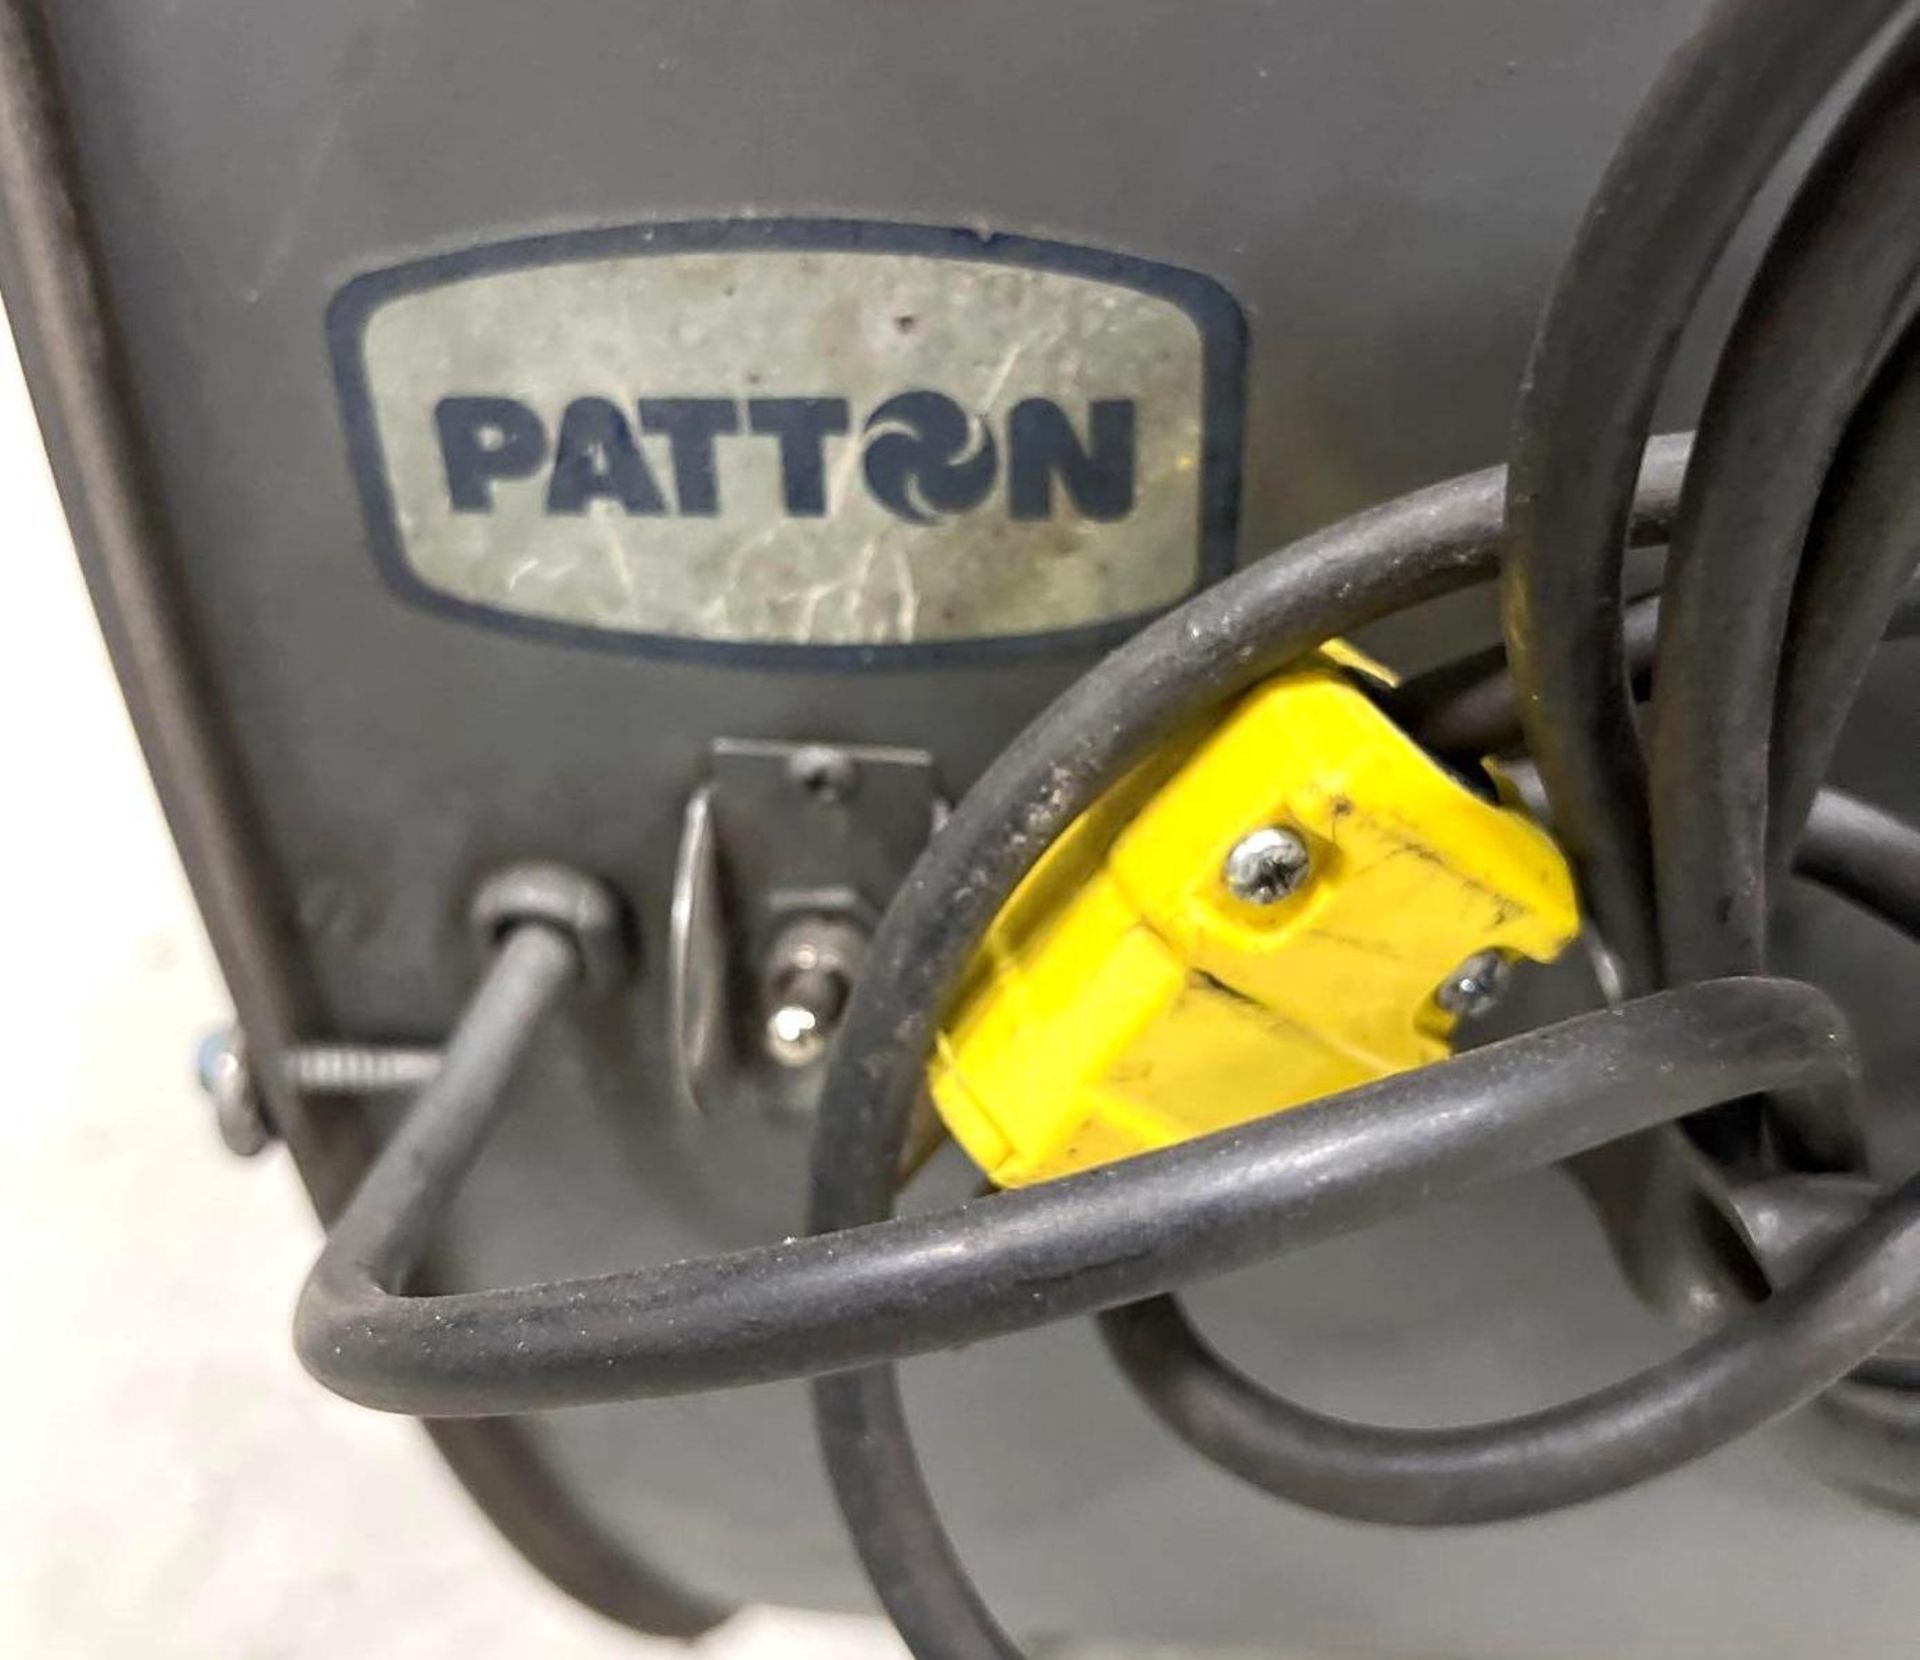 42" Patton Portable Drum Fan, Floor Fan, 115V - Image 3 of 4